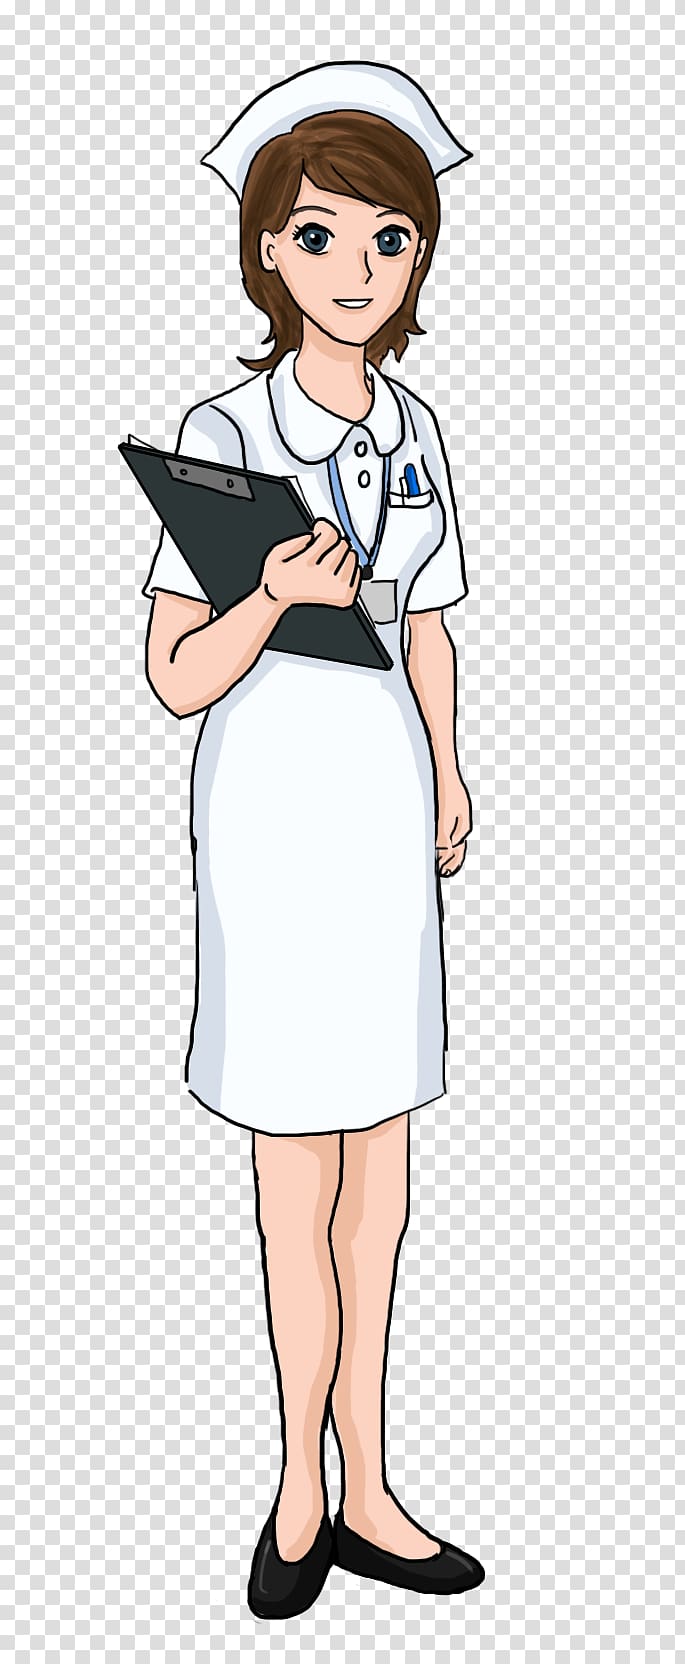 Nursing Free content , Nurse transparent background PNG clipart